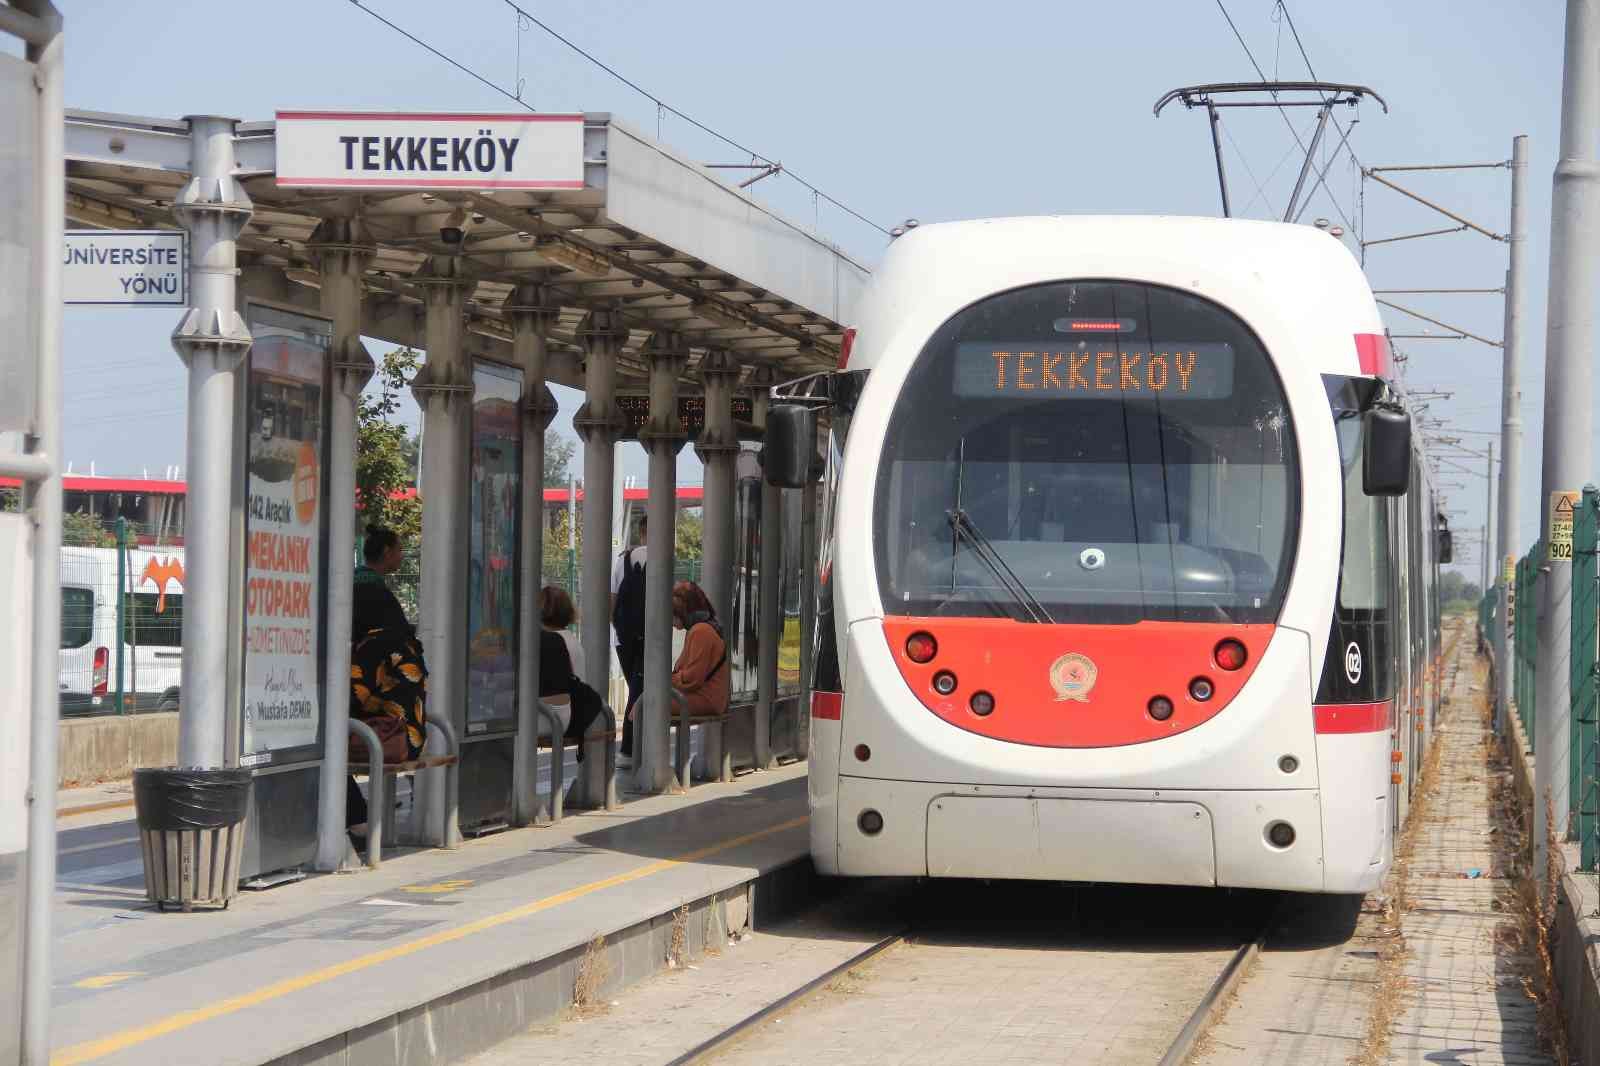 Tekkeköy’de tramvay Zafer Bayramı konserleri için ücretsiz